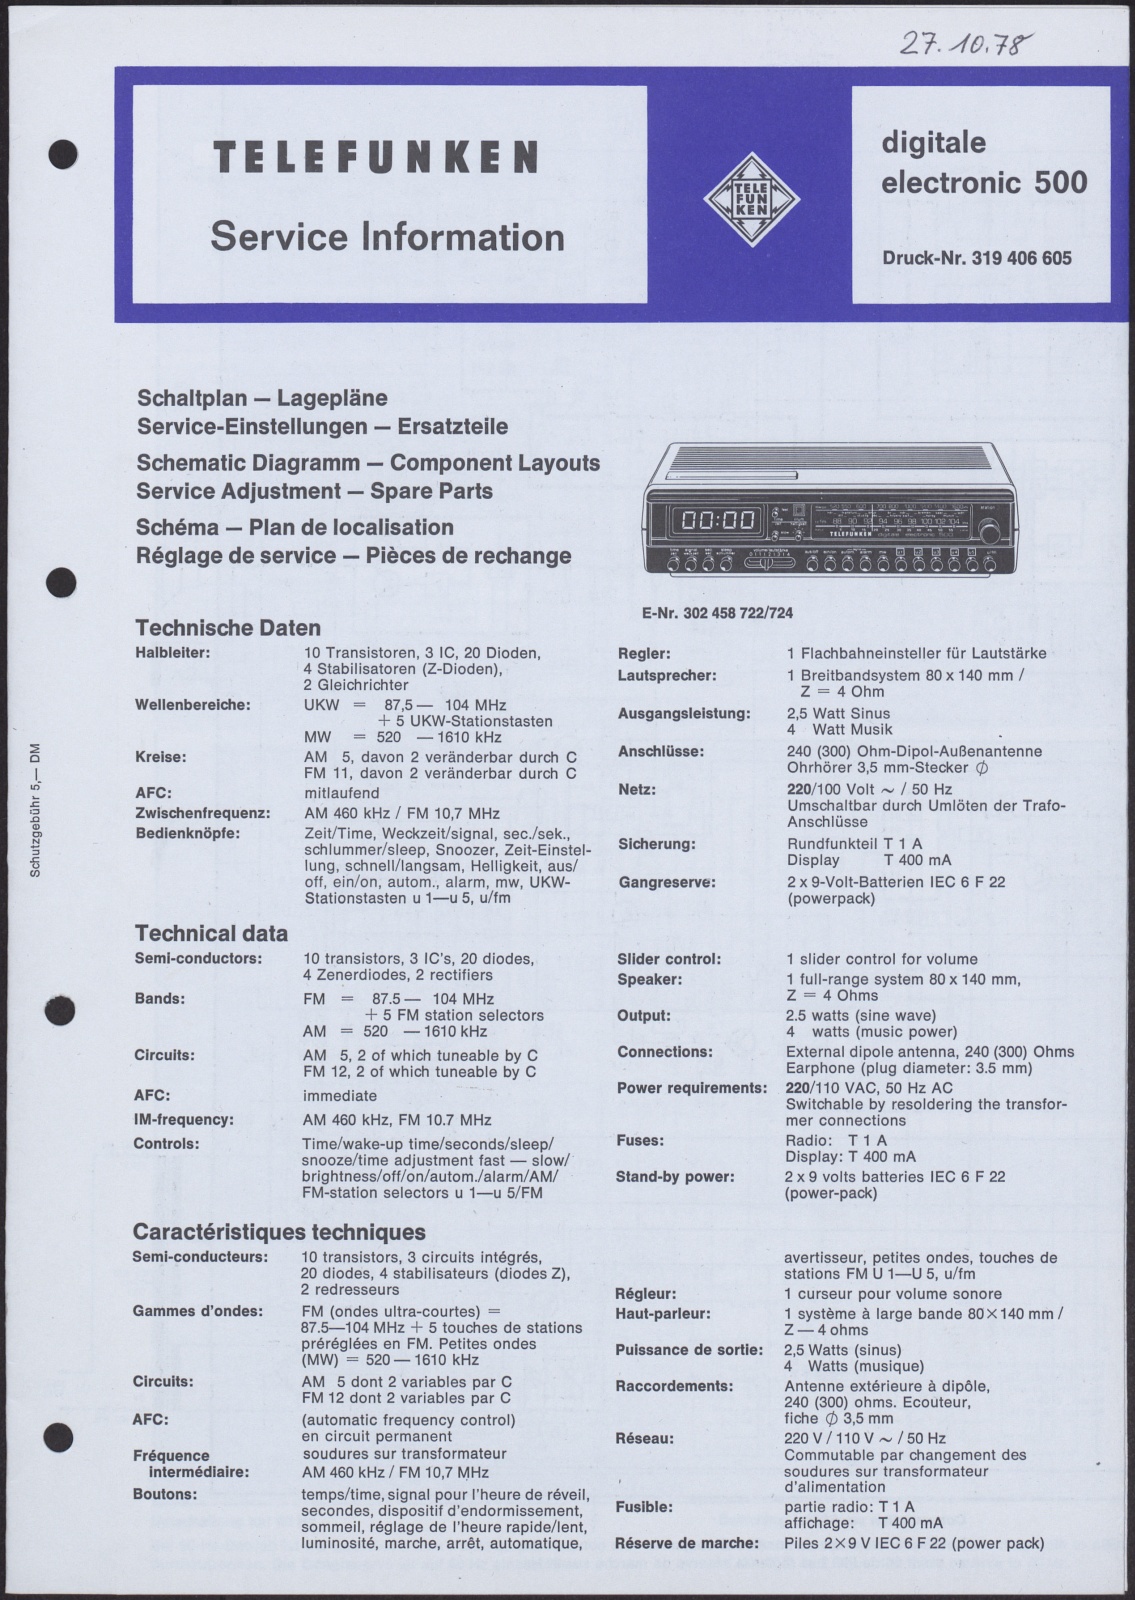 Bedienungsanleitung: Telefunken Service Information digitale electronic 500 (Stiftung Deutsches Technikmuseum Berlin CC0)